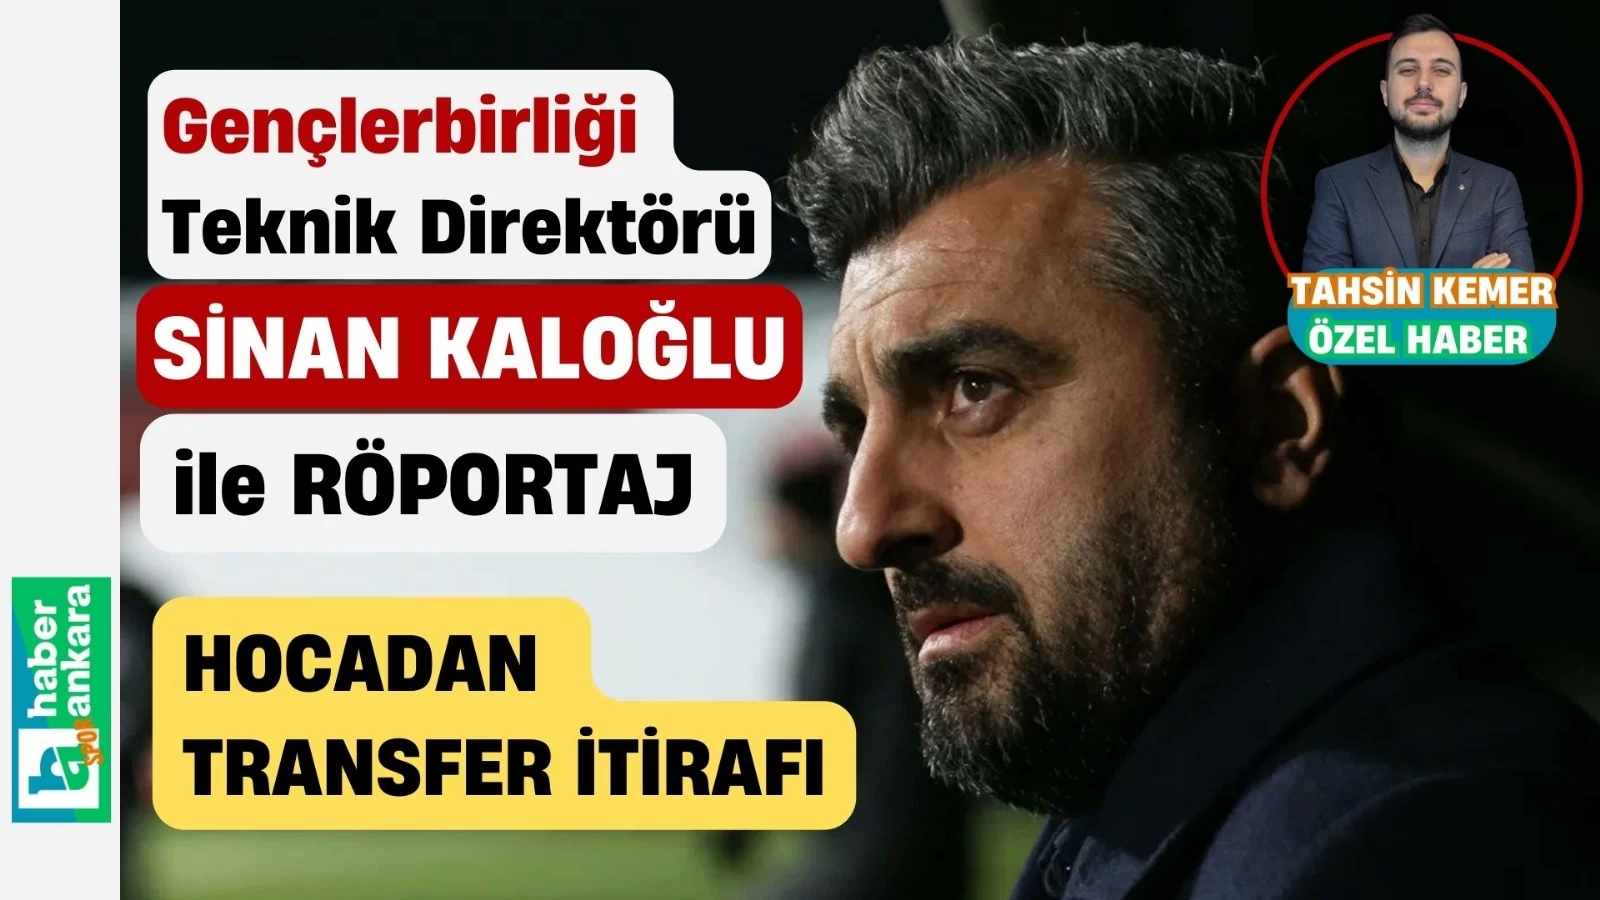 Sinan Kaloğlu’ndan Haber Ankara'ya transfer itirafı! Geç kaldığımız için ismi geçen ve geçmeyen oyuncuları kaçırdık